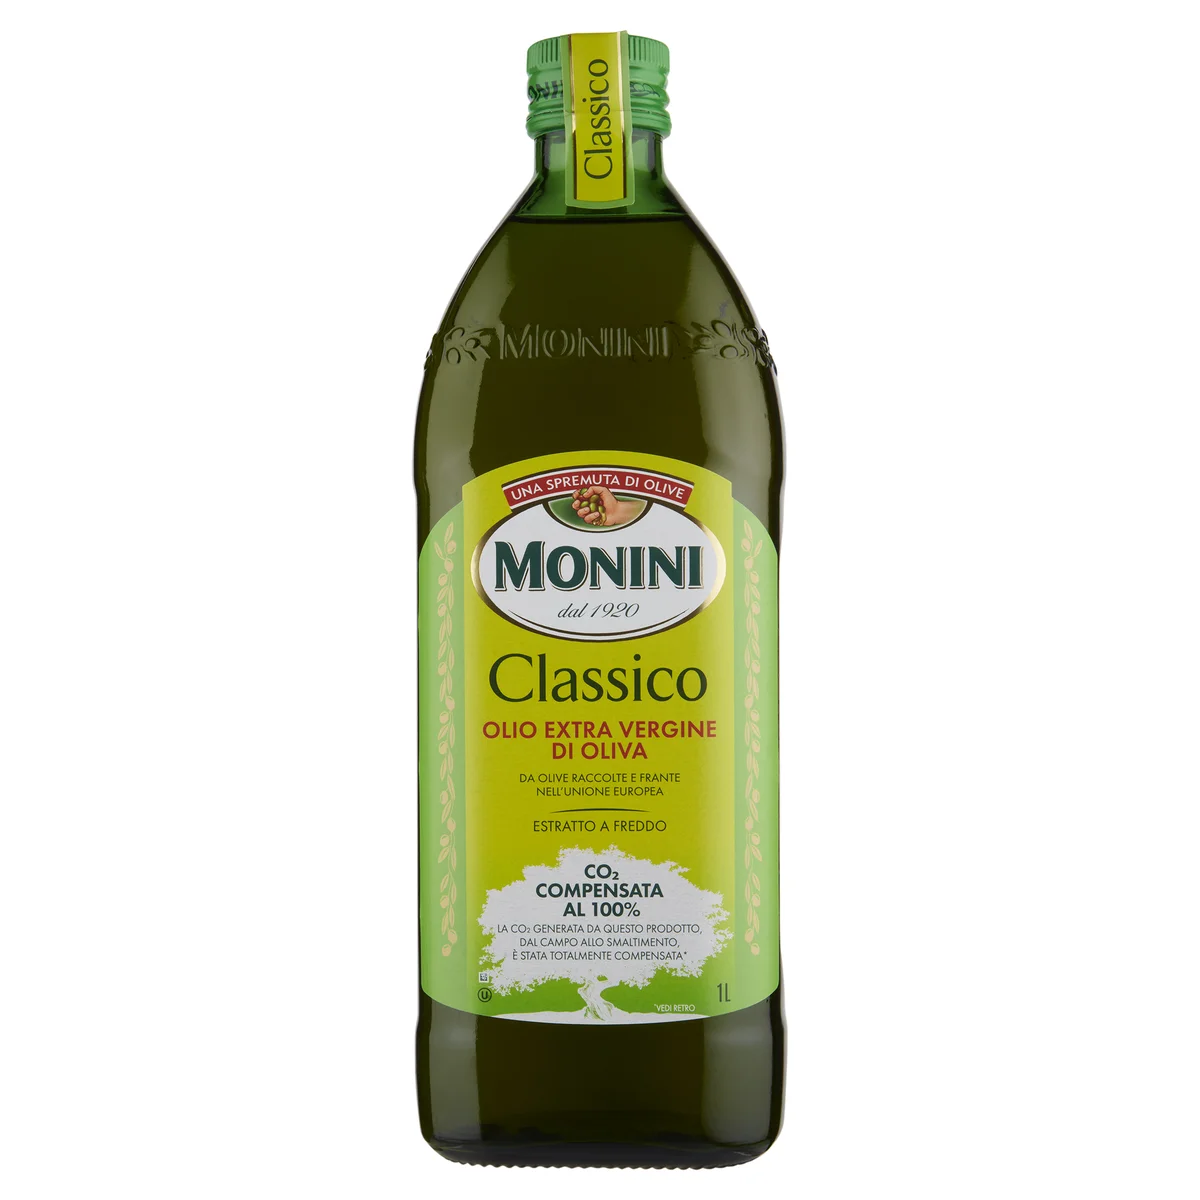 Confezione 3X200 ml spray: olio extravergine d'oliva, condimento allo  zenzero e al tartufo bianco